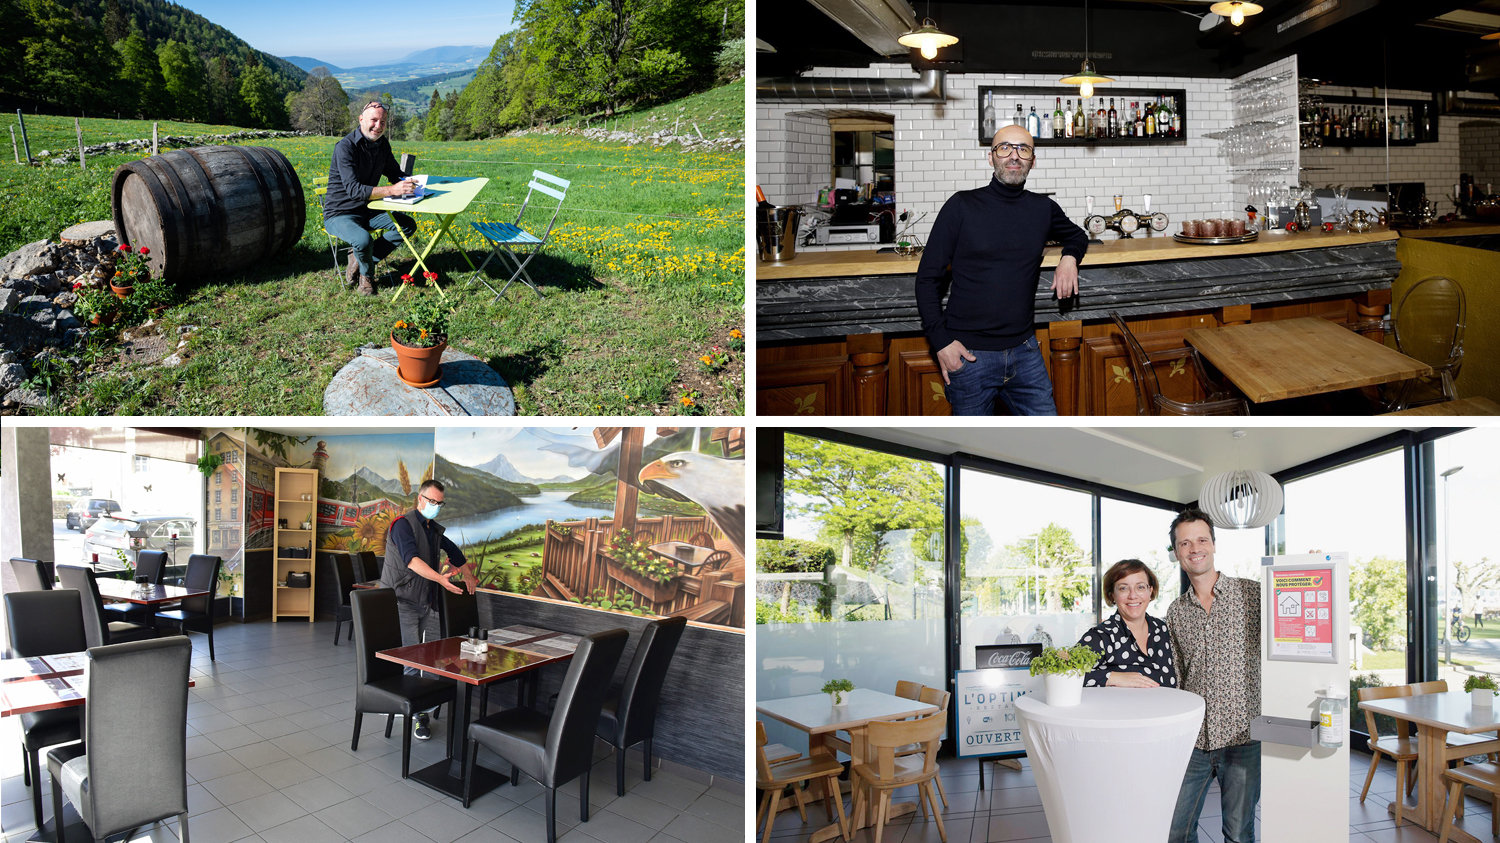 Quatre tenanciers du canton de Neuchâtel livrent leurs impressions entre espoir et appréhension sur la réouverture de leur restaurant.